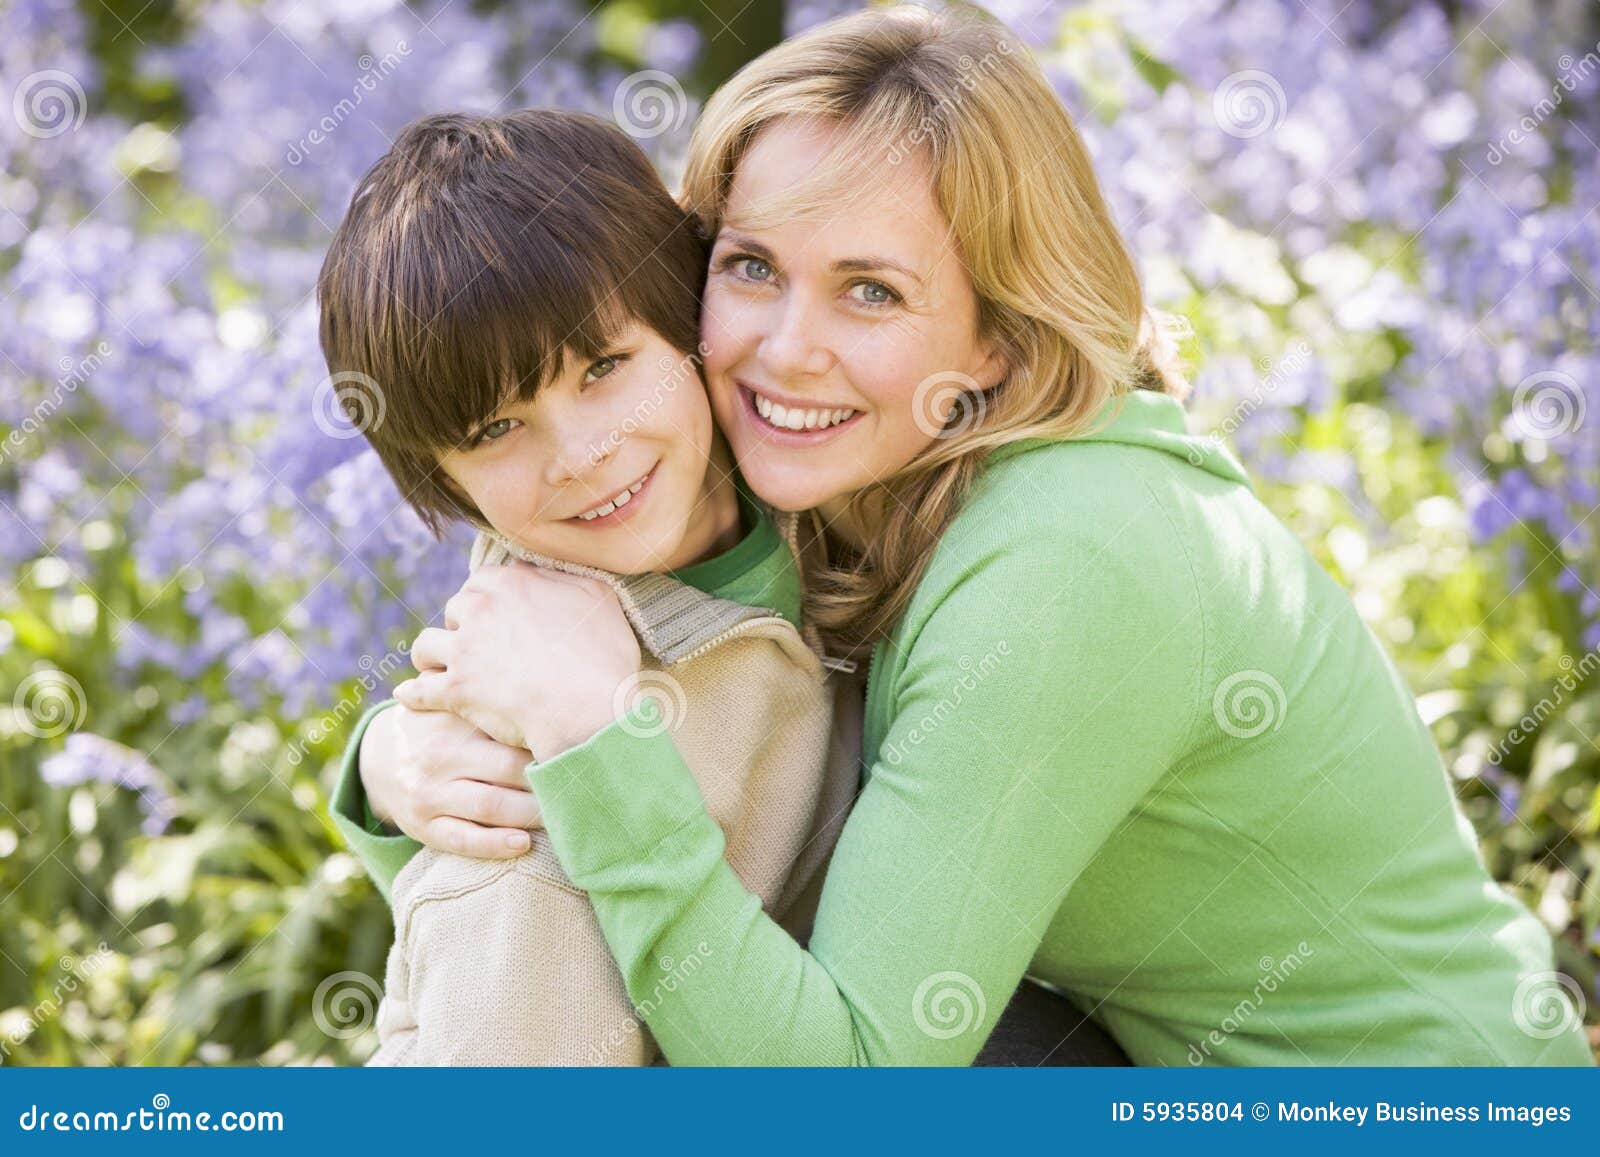 Родные мамы дают сыновьям. Мама и подросток. Красивая мама с подростком. Мальчик обнимает маму.